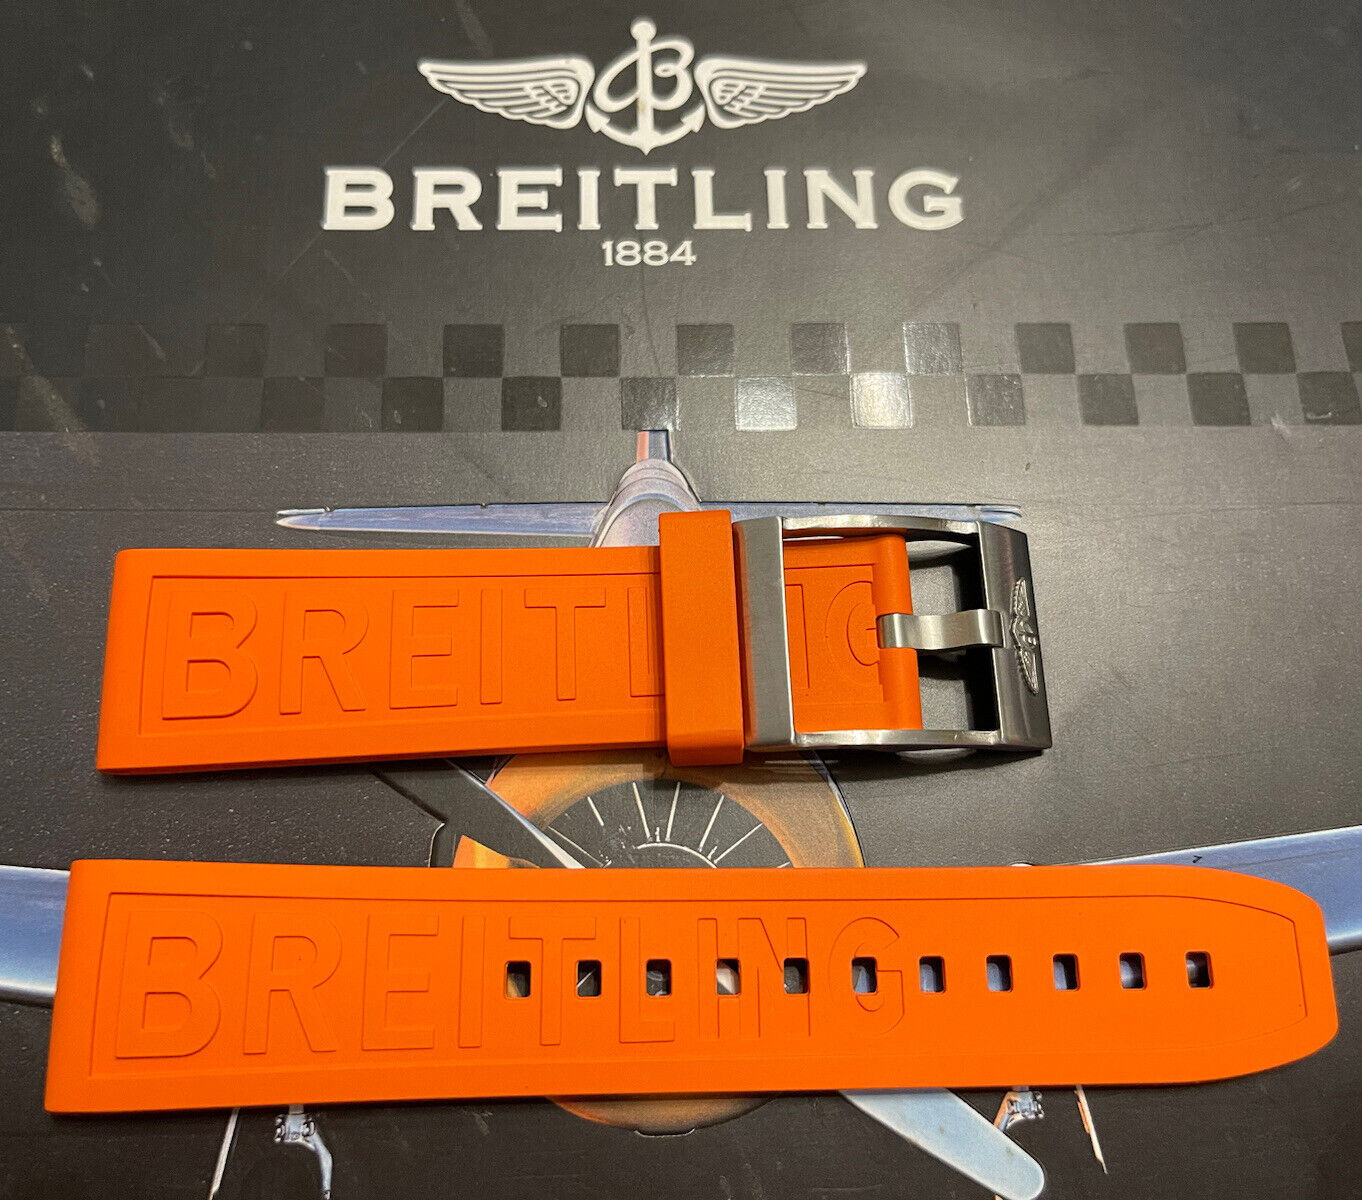 Breitling OEM Diver Pro Orange Rubber Strap OEM Tang Buckle